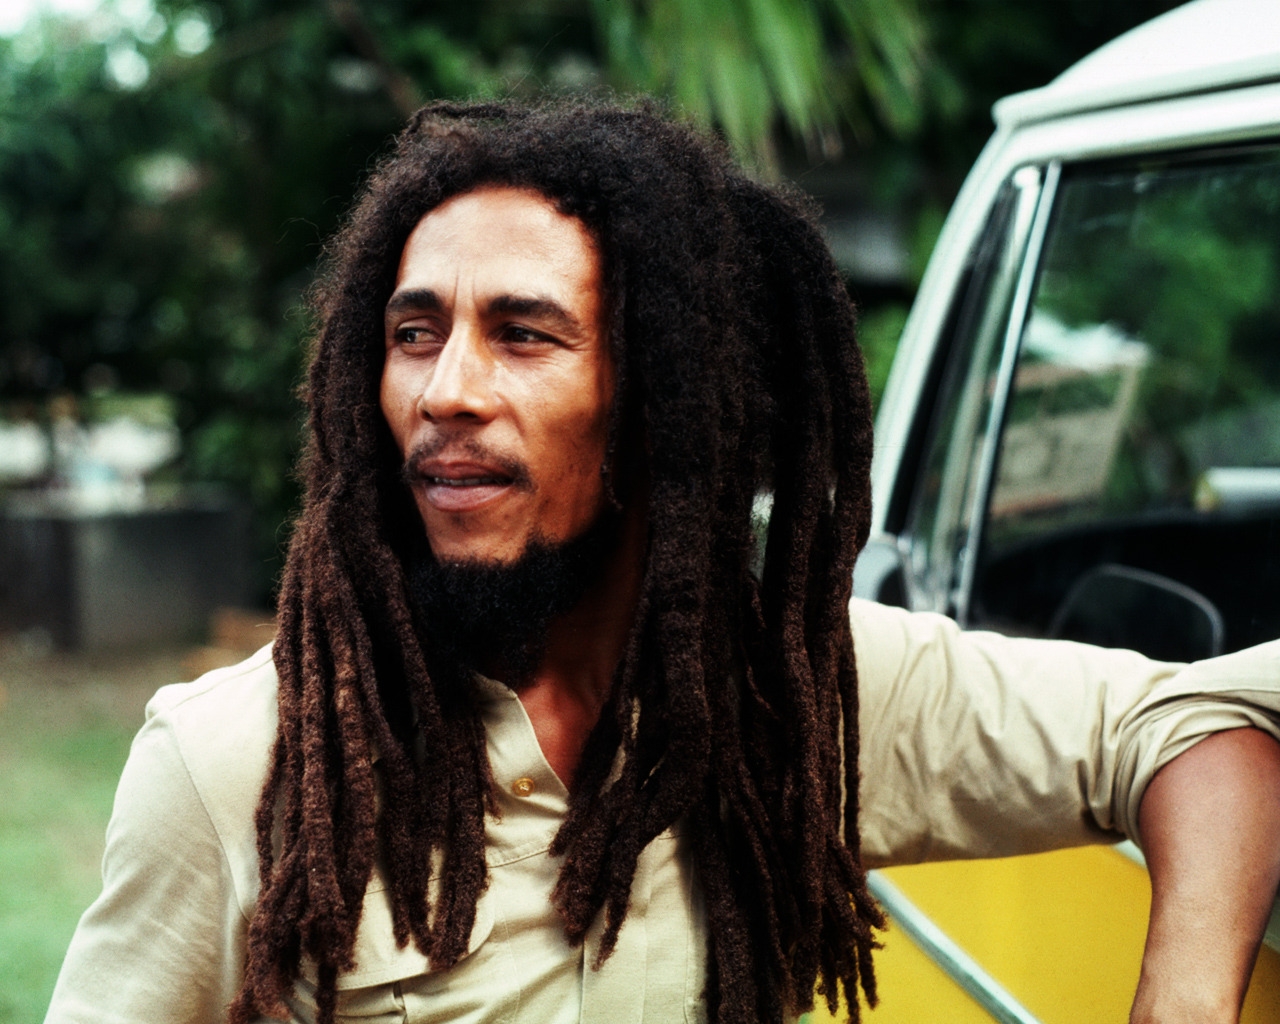 Bob Marley for 1280 x 1024 resolution